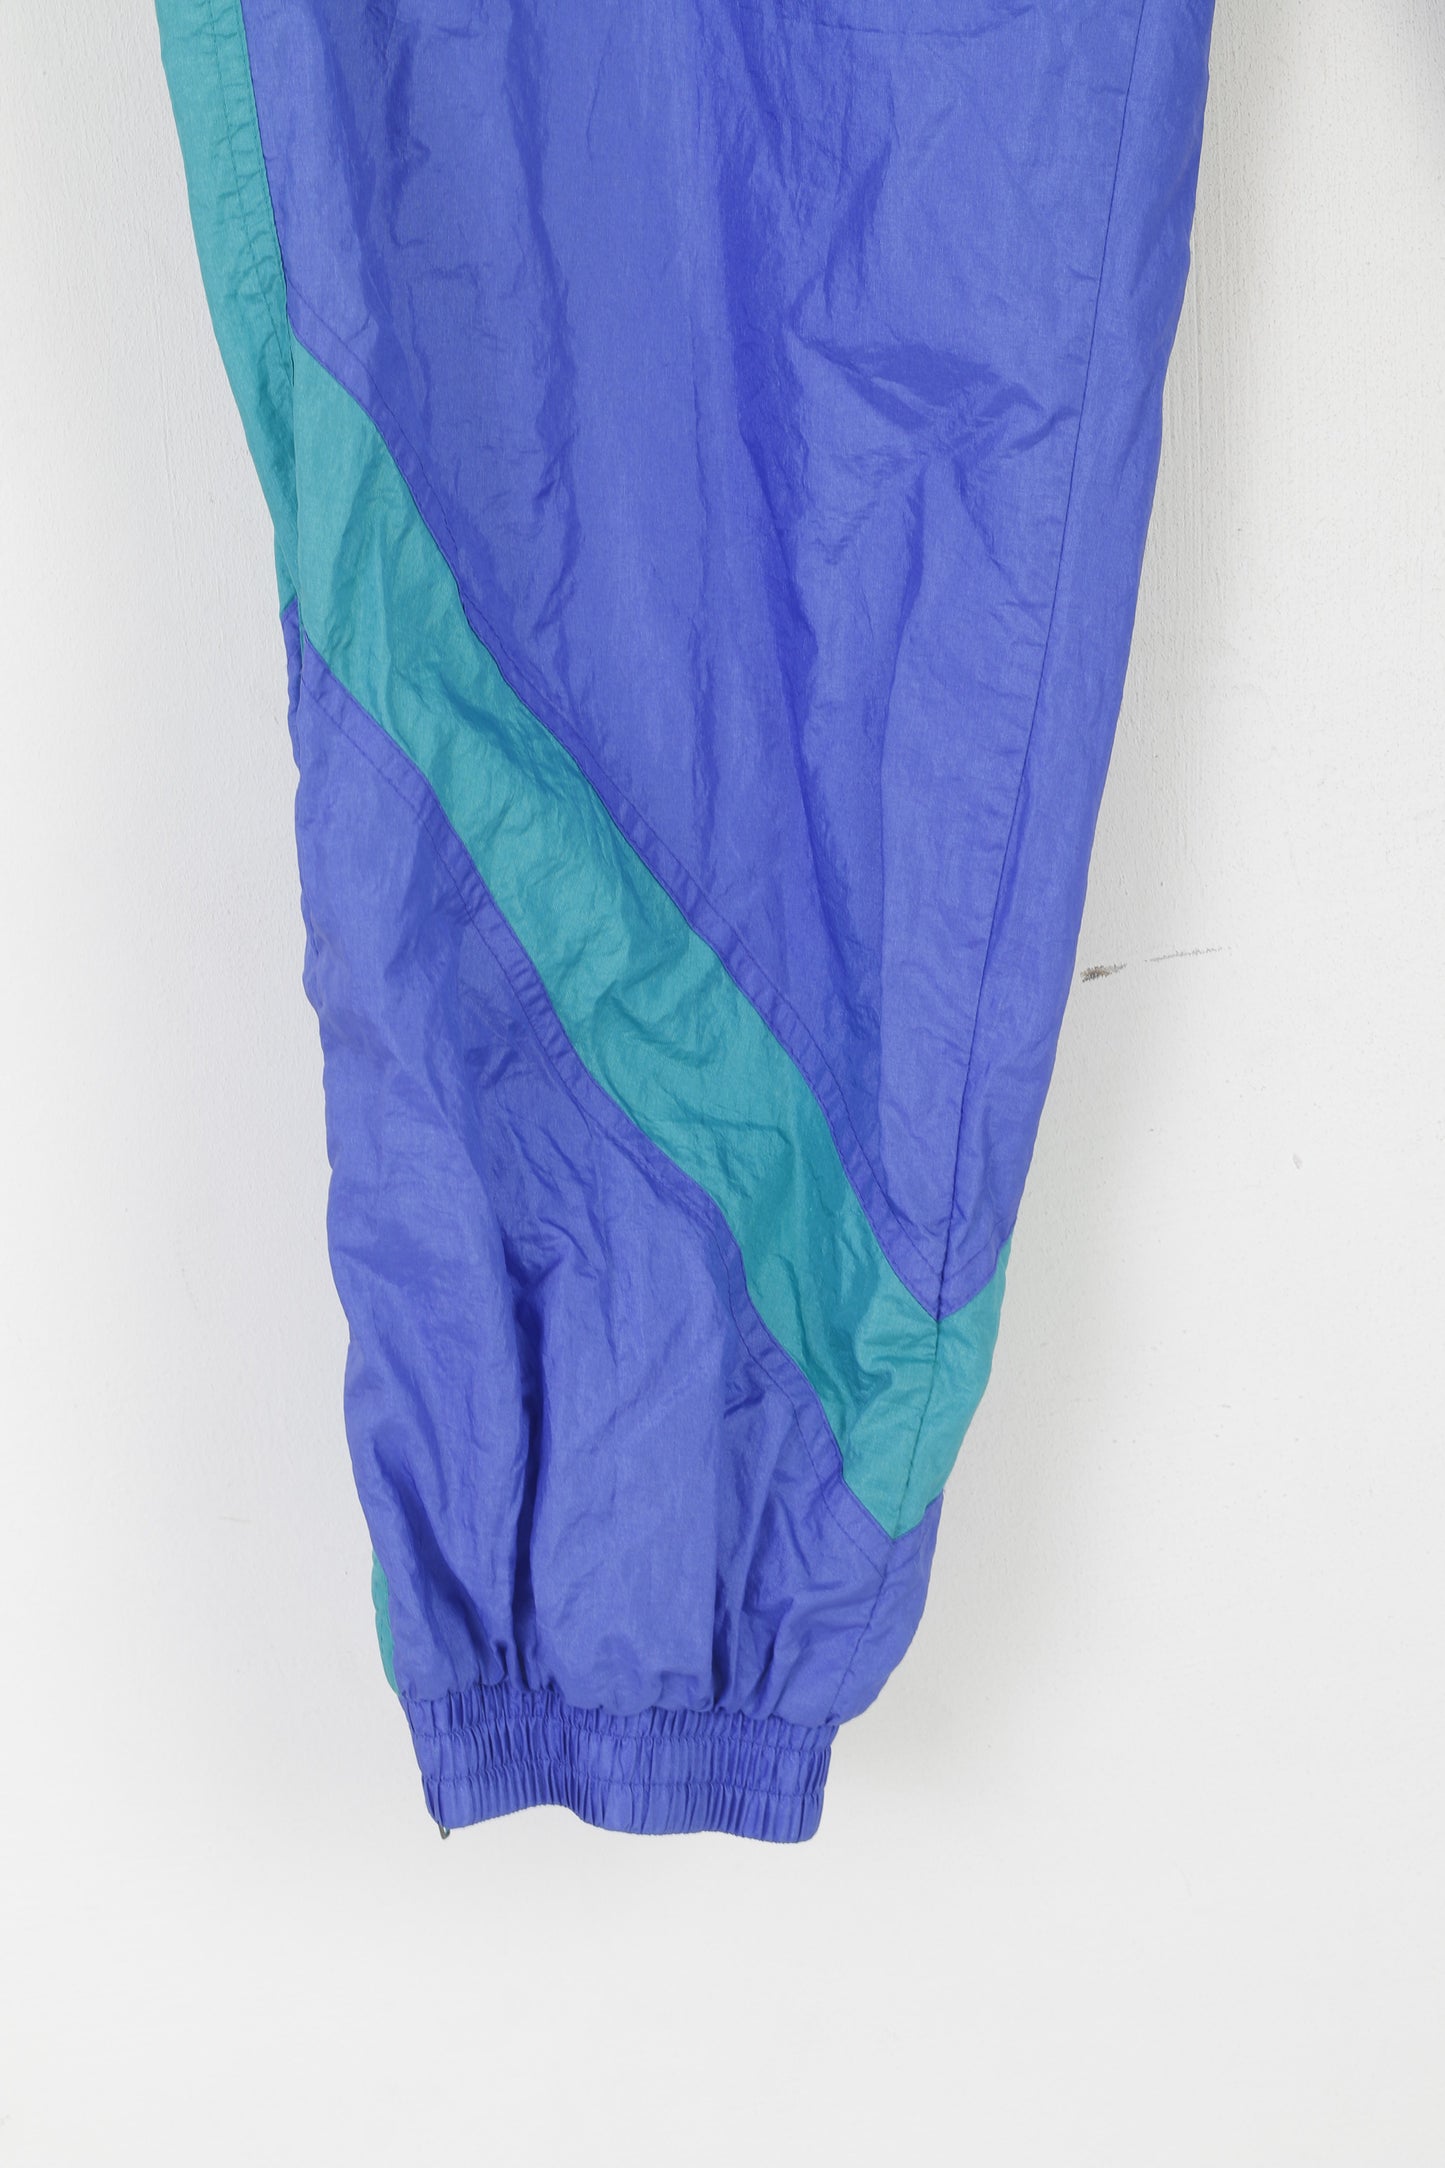 Etirel Men XXL Sweatpants Purple Shiny Vintage Drawstring Sportswear Trousers